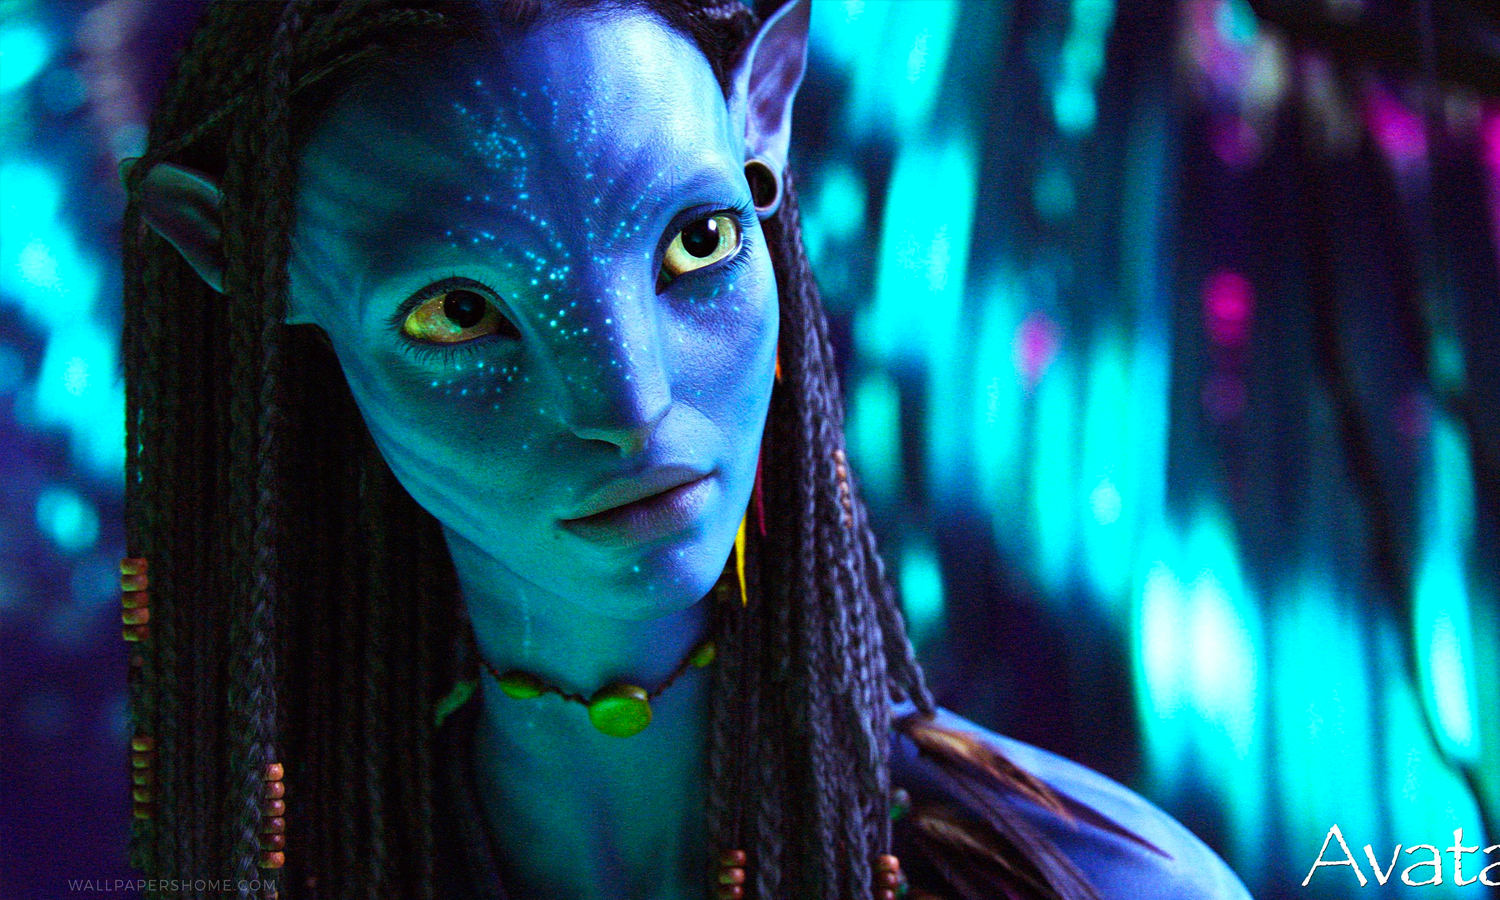 Bom tấn Avatar (2009) của đạo diễn James Cameron được tái chiếu rạp trong nước với nâng cấp về hình ảnh, âm thanh.